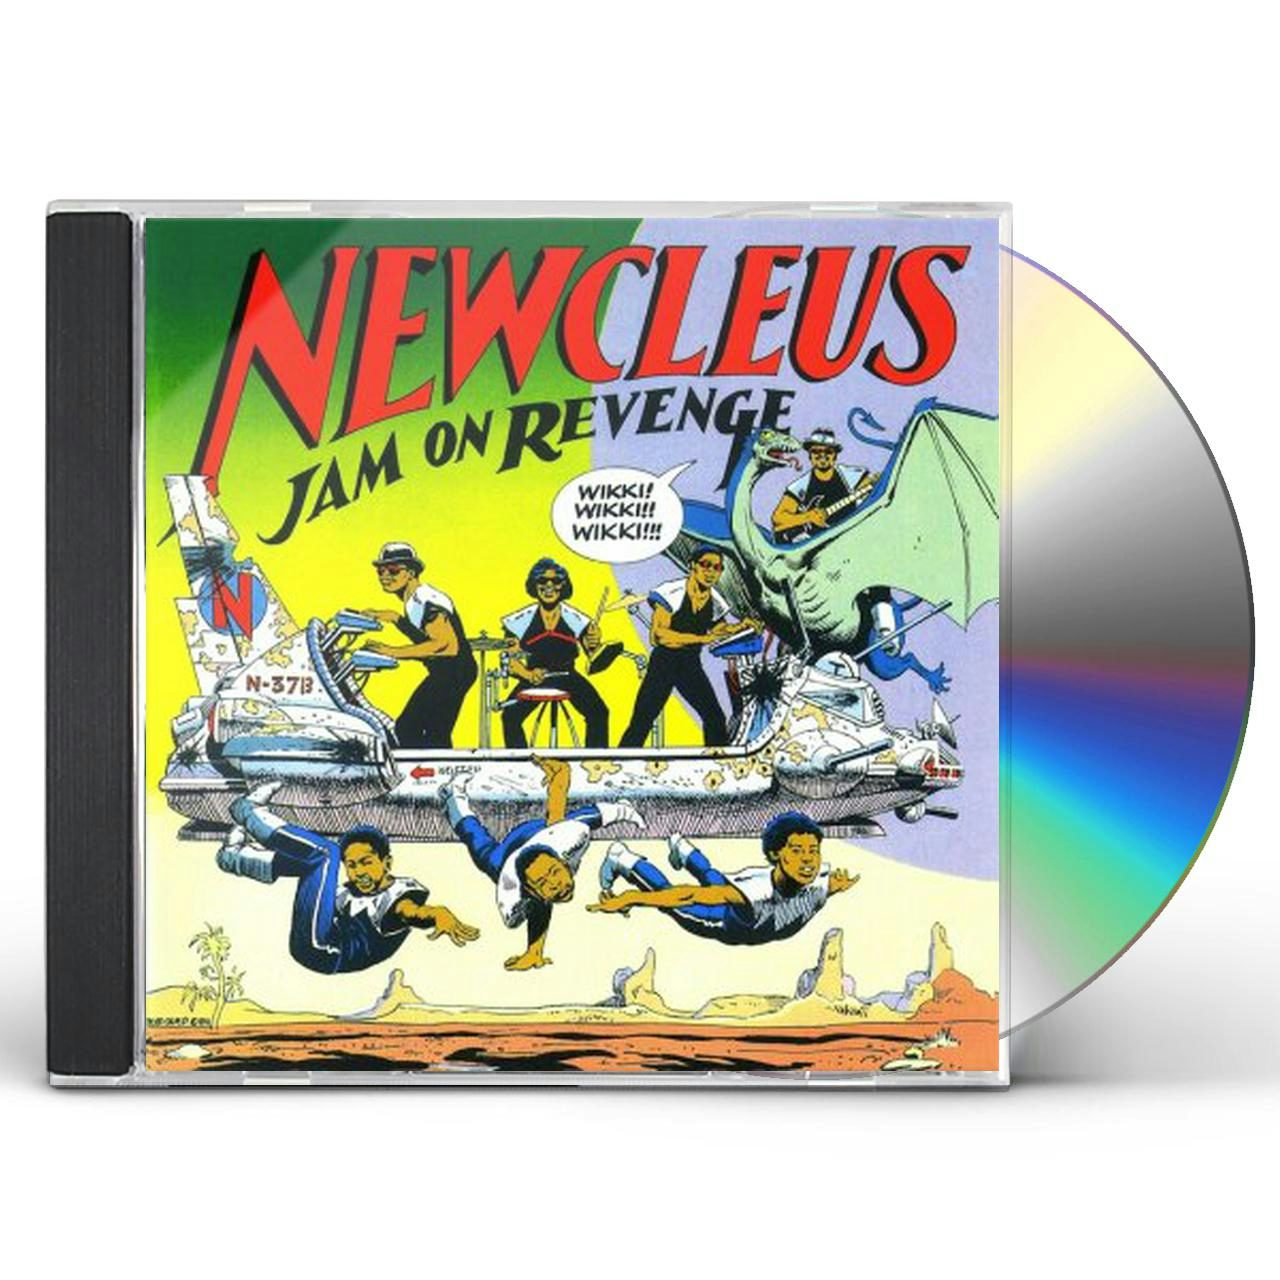 newcleus jam on it revenge cover art